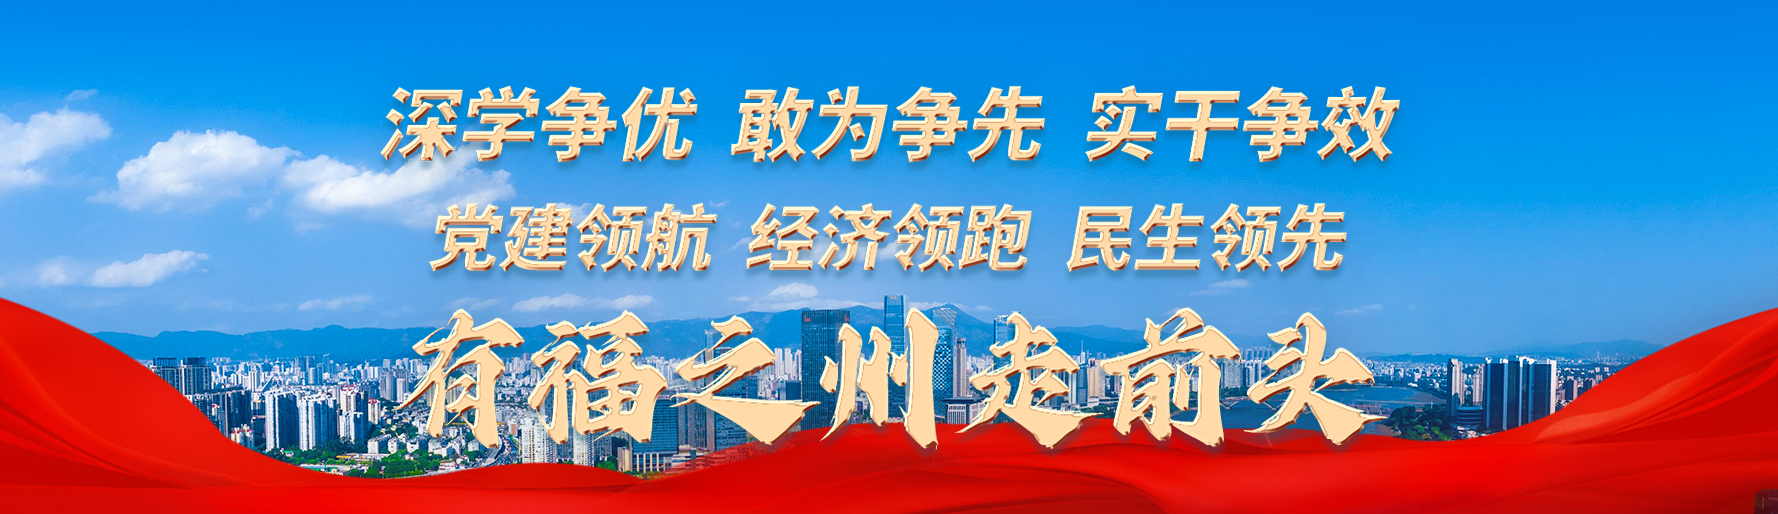 春节至今福州签约近130个项目 计划投资总额超1500亿元